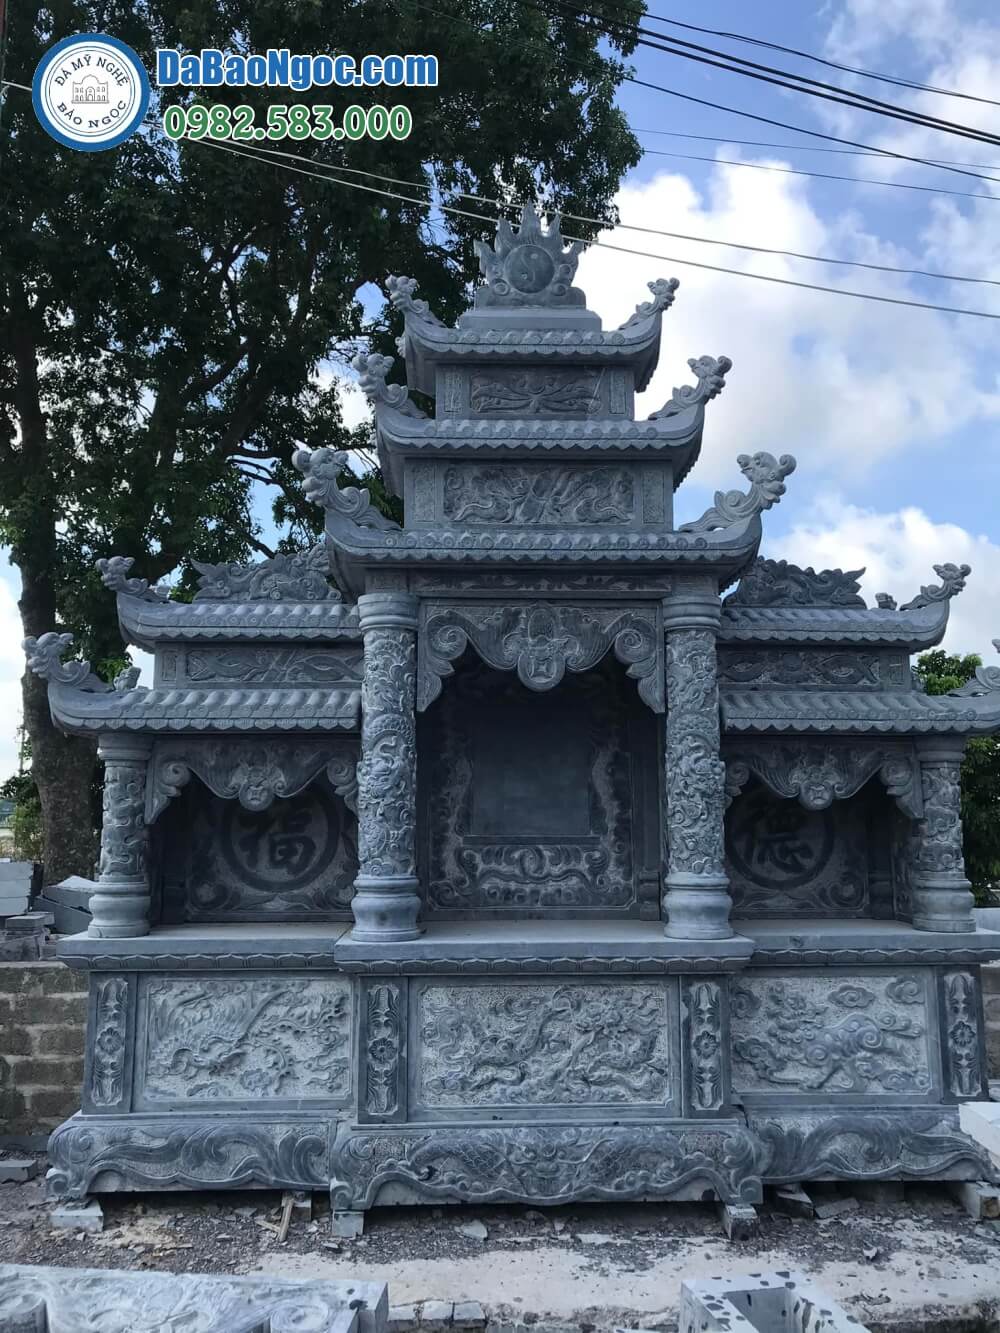 Bán và xây dựng, làm Lăng thờ đá ở Điện Biên rẻ đẹp